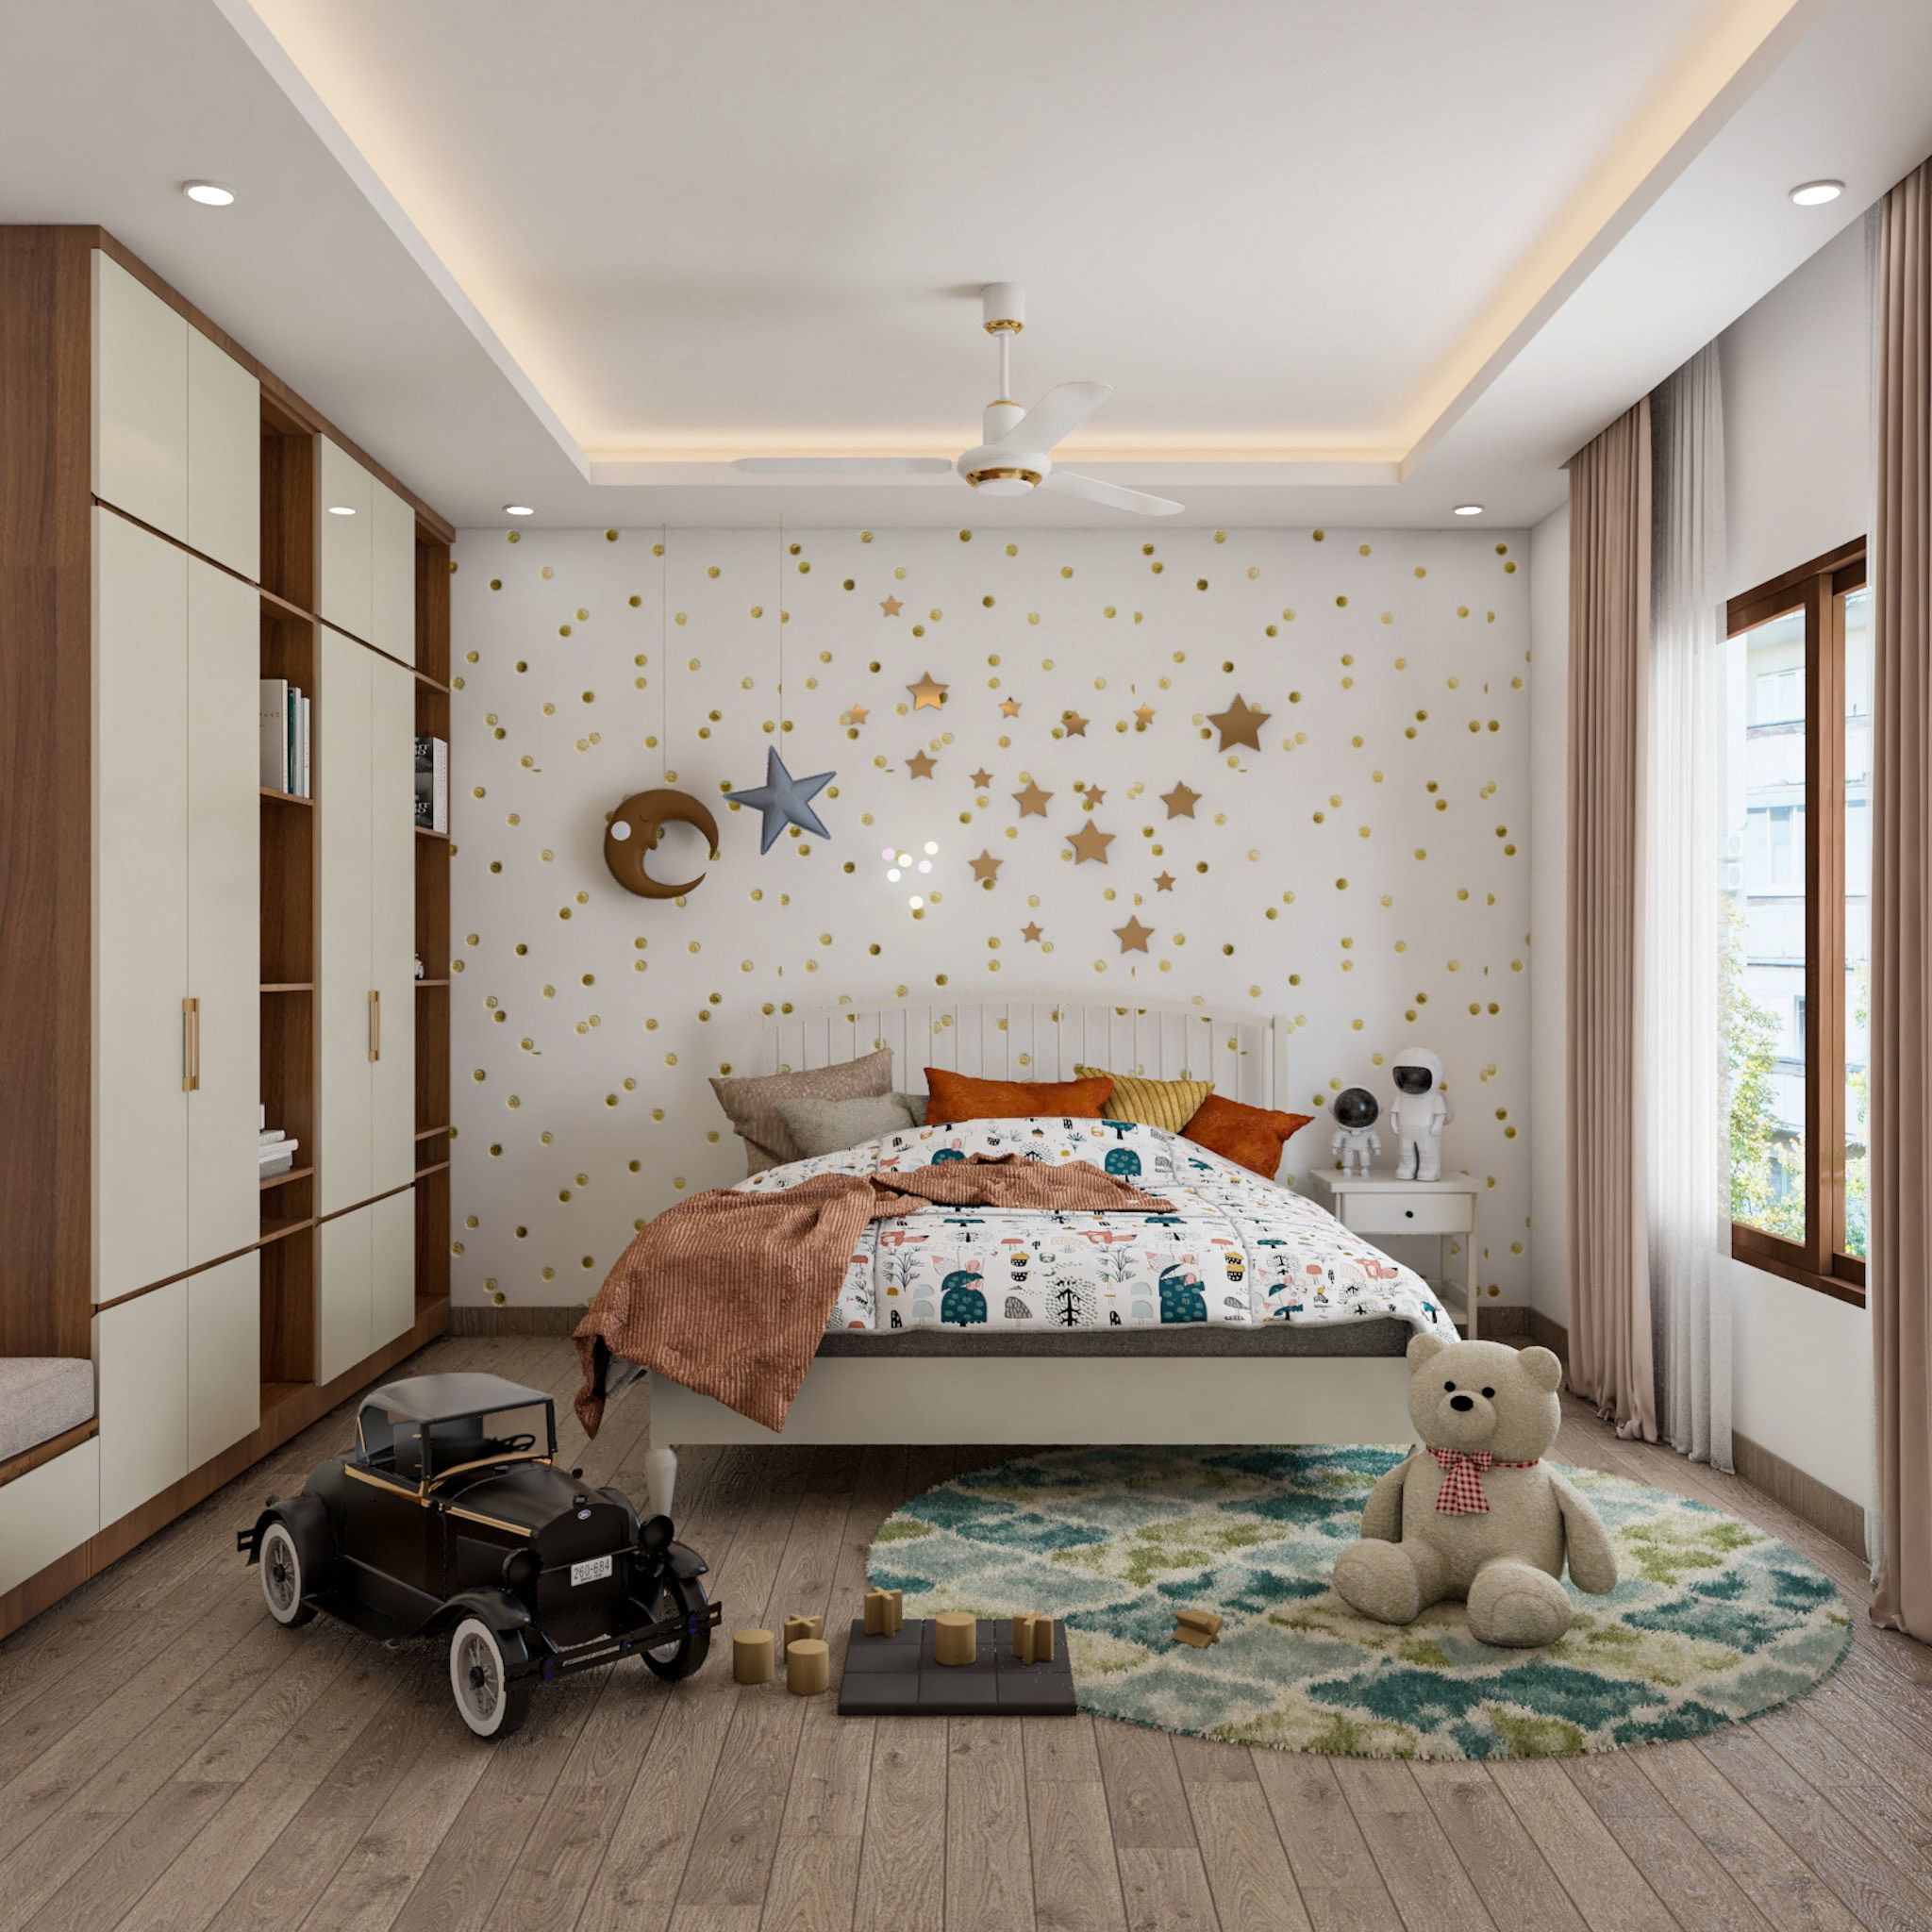 Modern Rectangular False Ceiling Design For Bedrooms